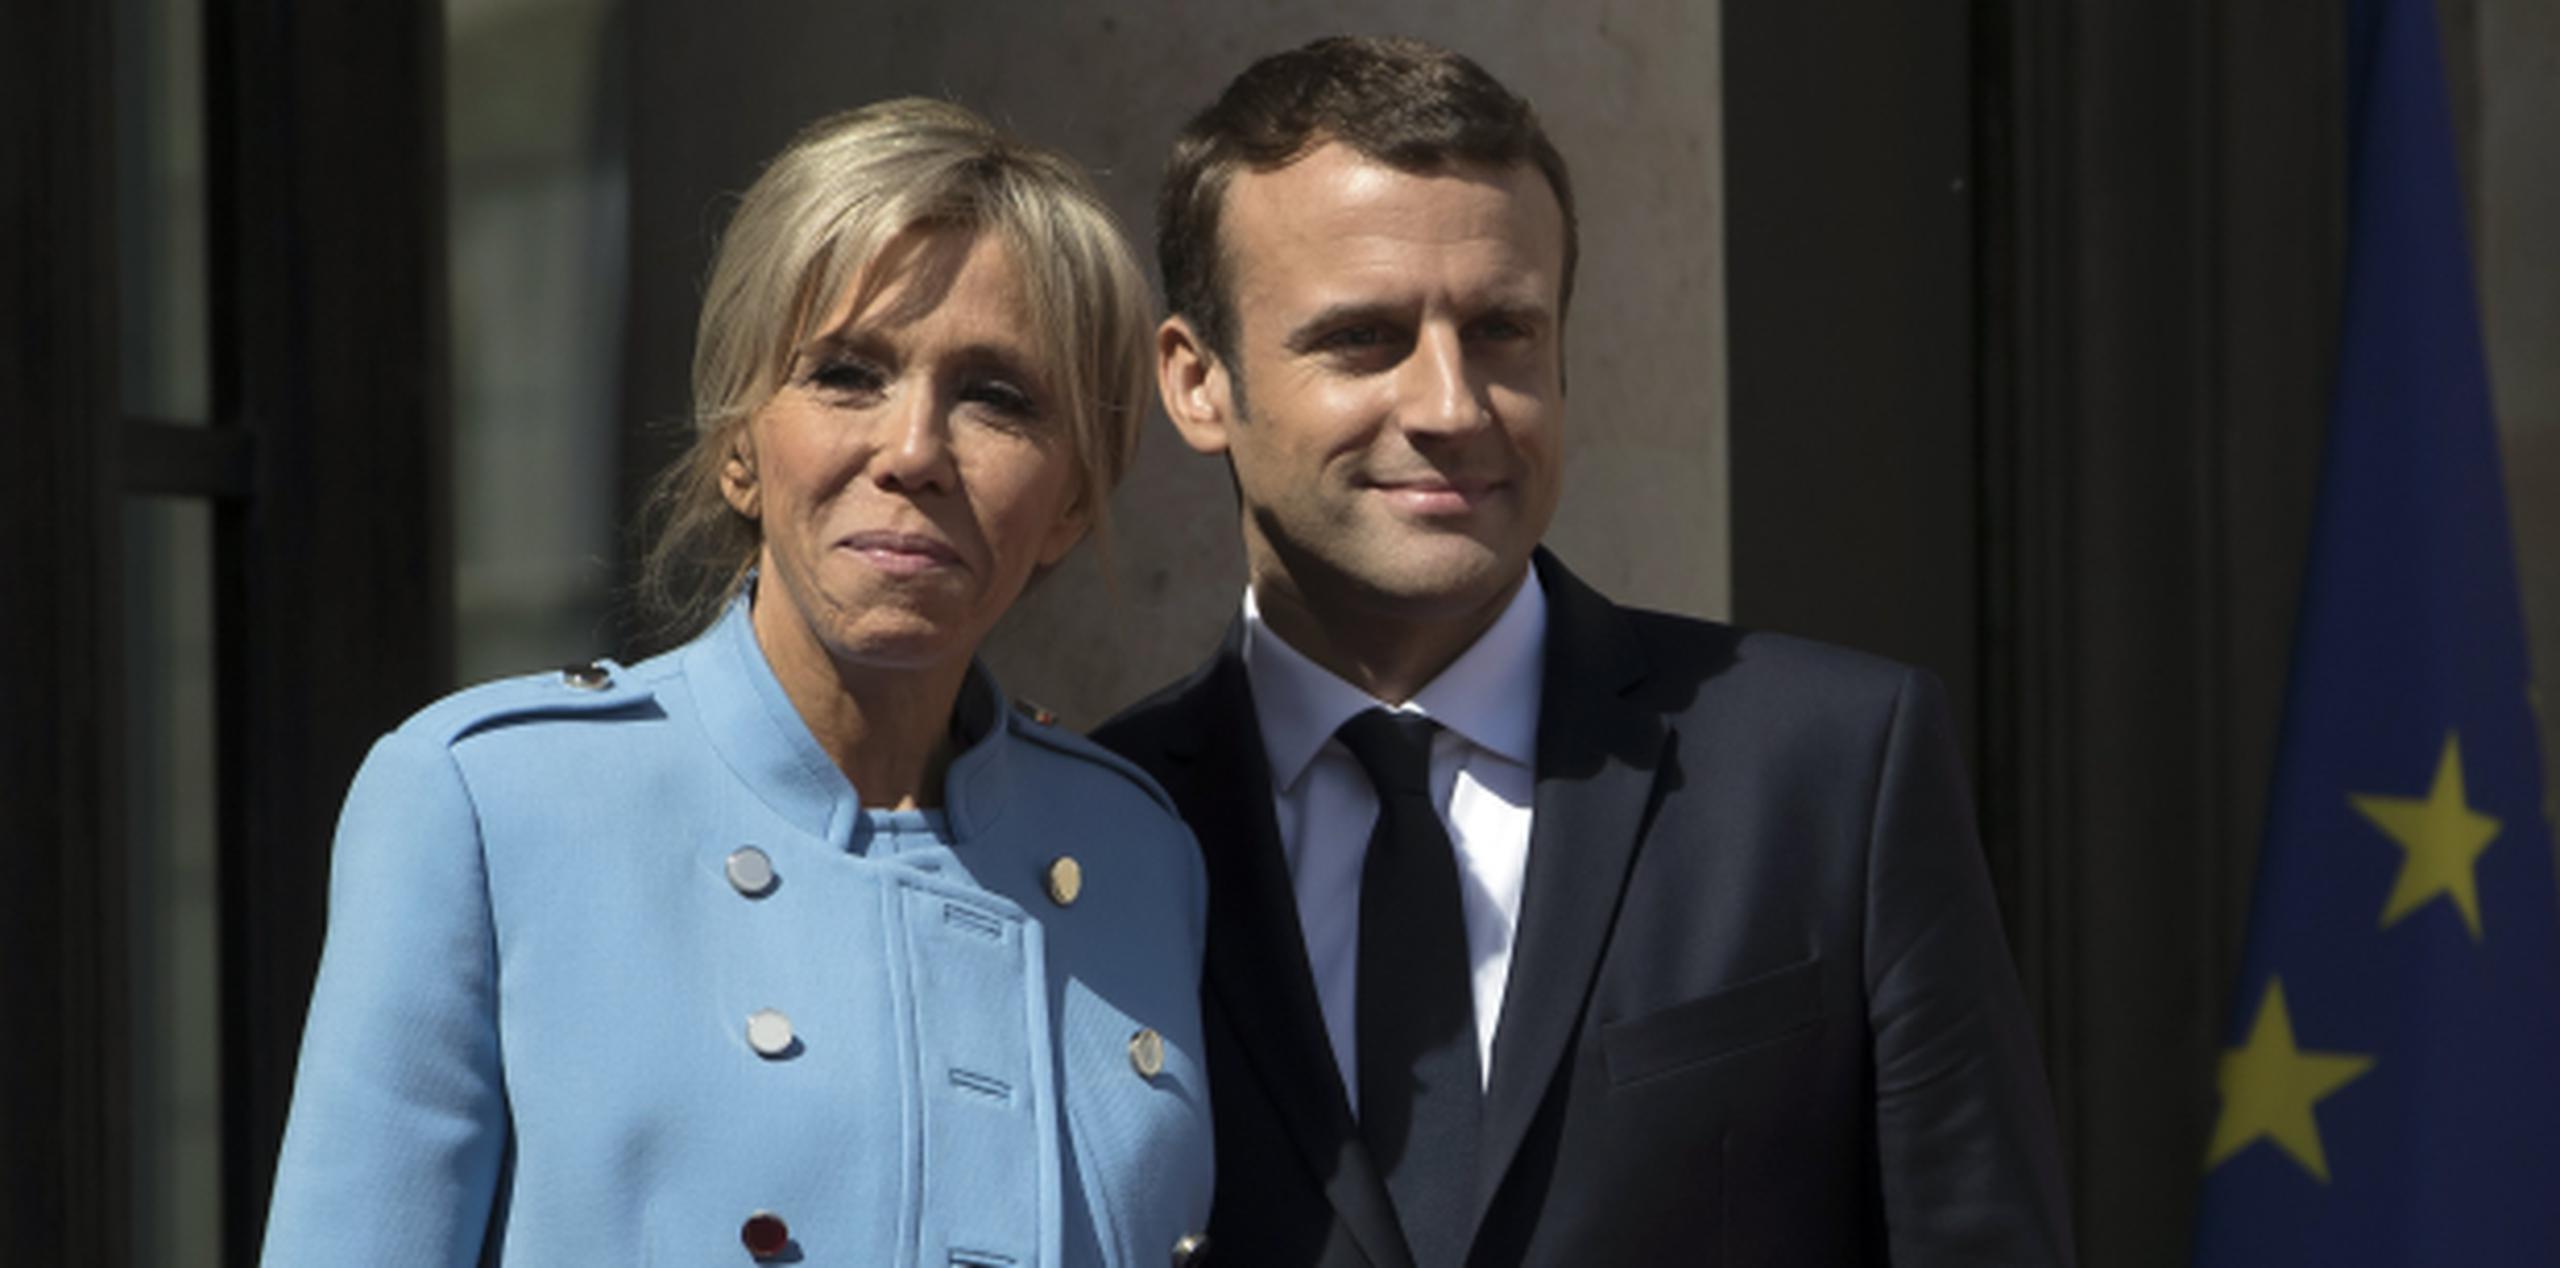 Brigitte Trogneux y su esposo, el nuevo presidente de Francia, Emmanuel Macron. (EFE / EPA / Ian Langsdon)